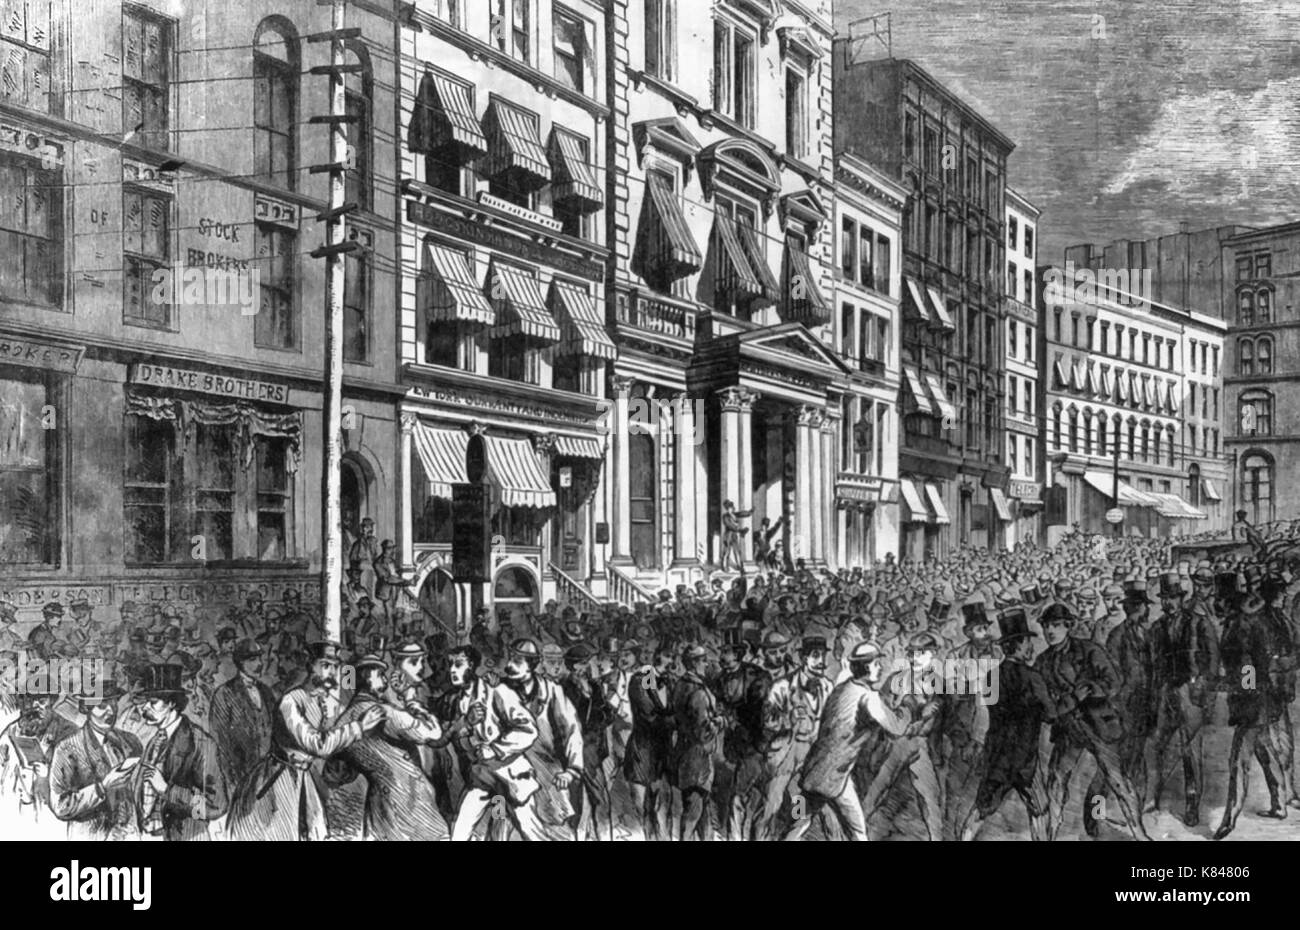 Die große finanzielle Panik - Anzeigen in Breite Str., in der Nähe der Börse, am Samstag Mittag, Sept. 20 Th, 1873, nach dem Schließen der Türen austauschen Stockfoto